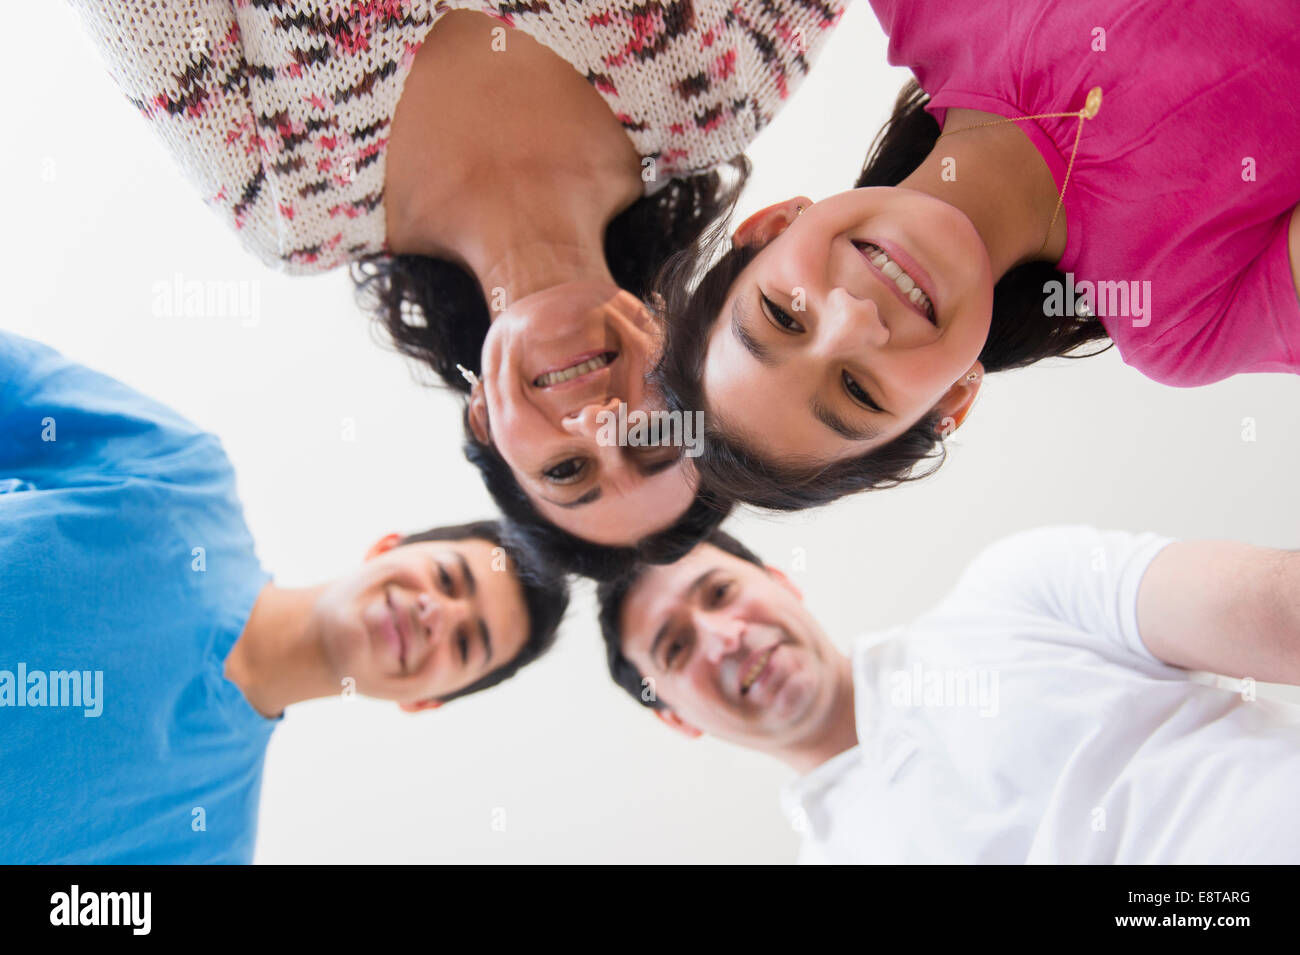 Niedrigen Winkel Ansicht der hispanischen Familie lächelnd Stockfoto